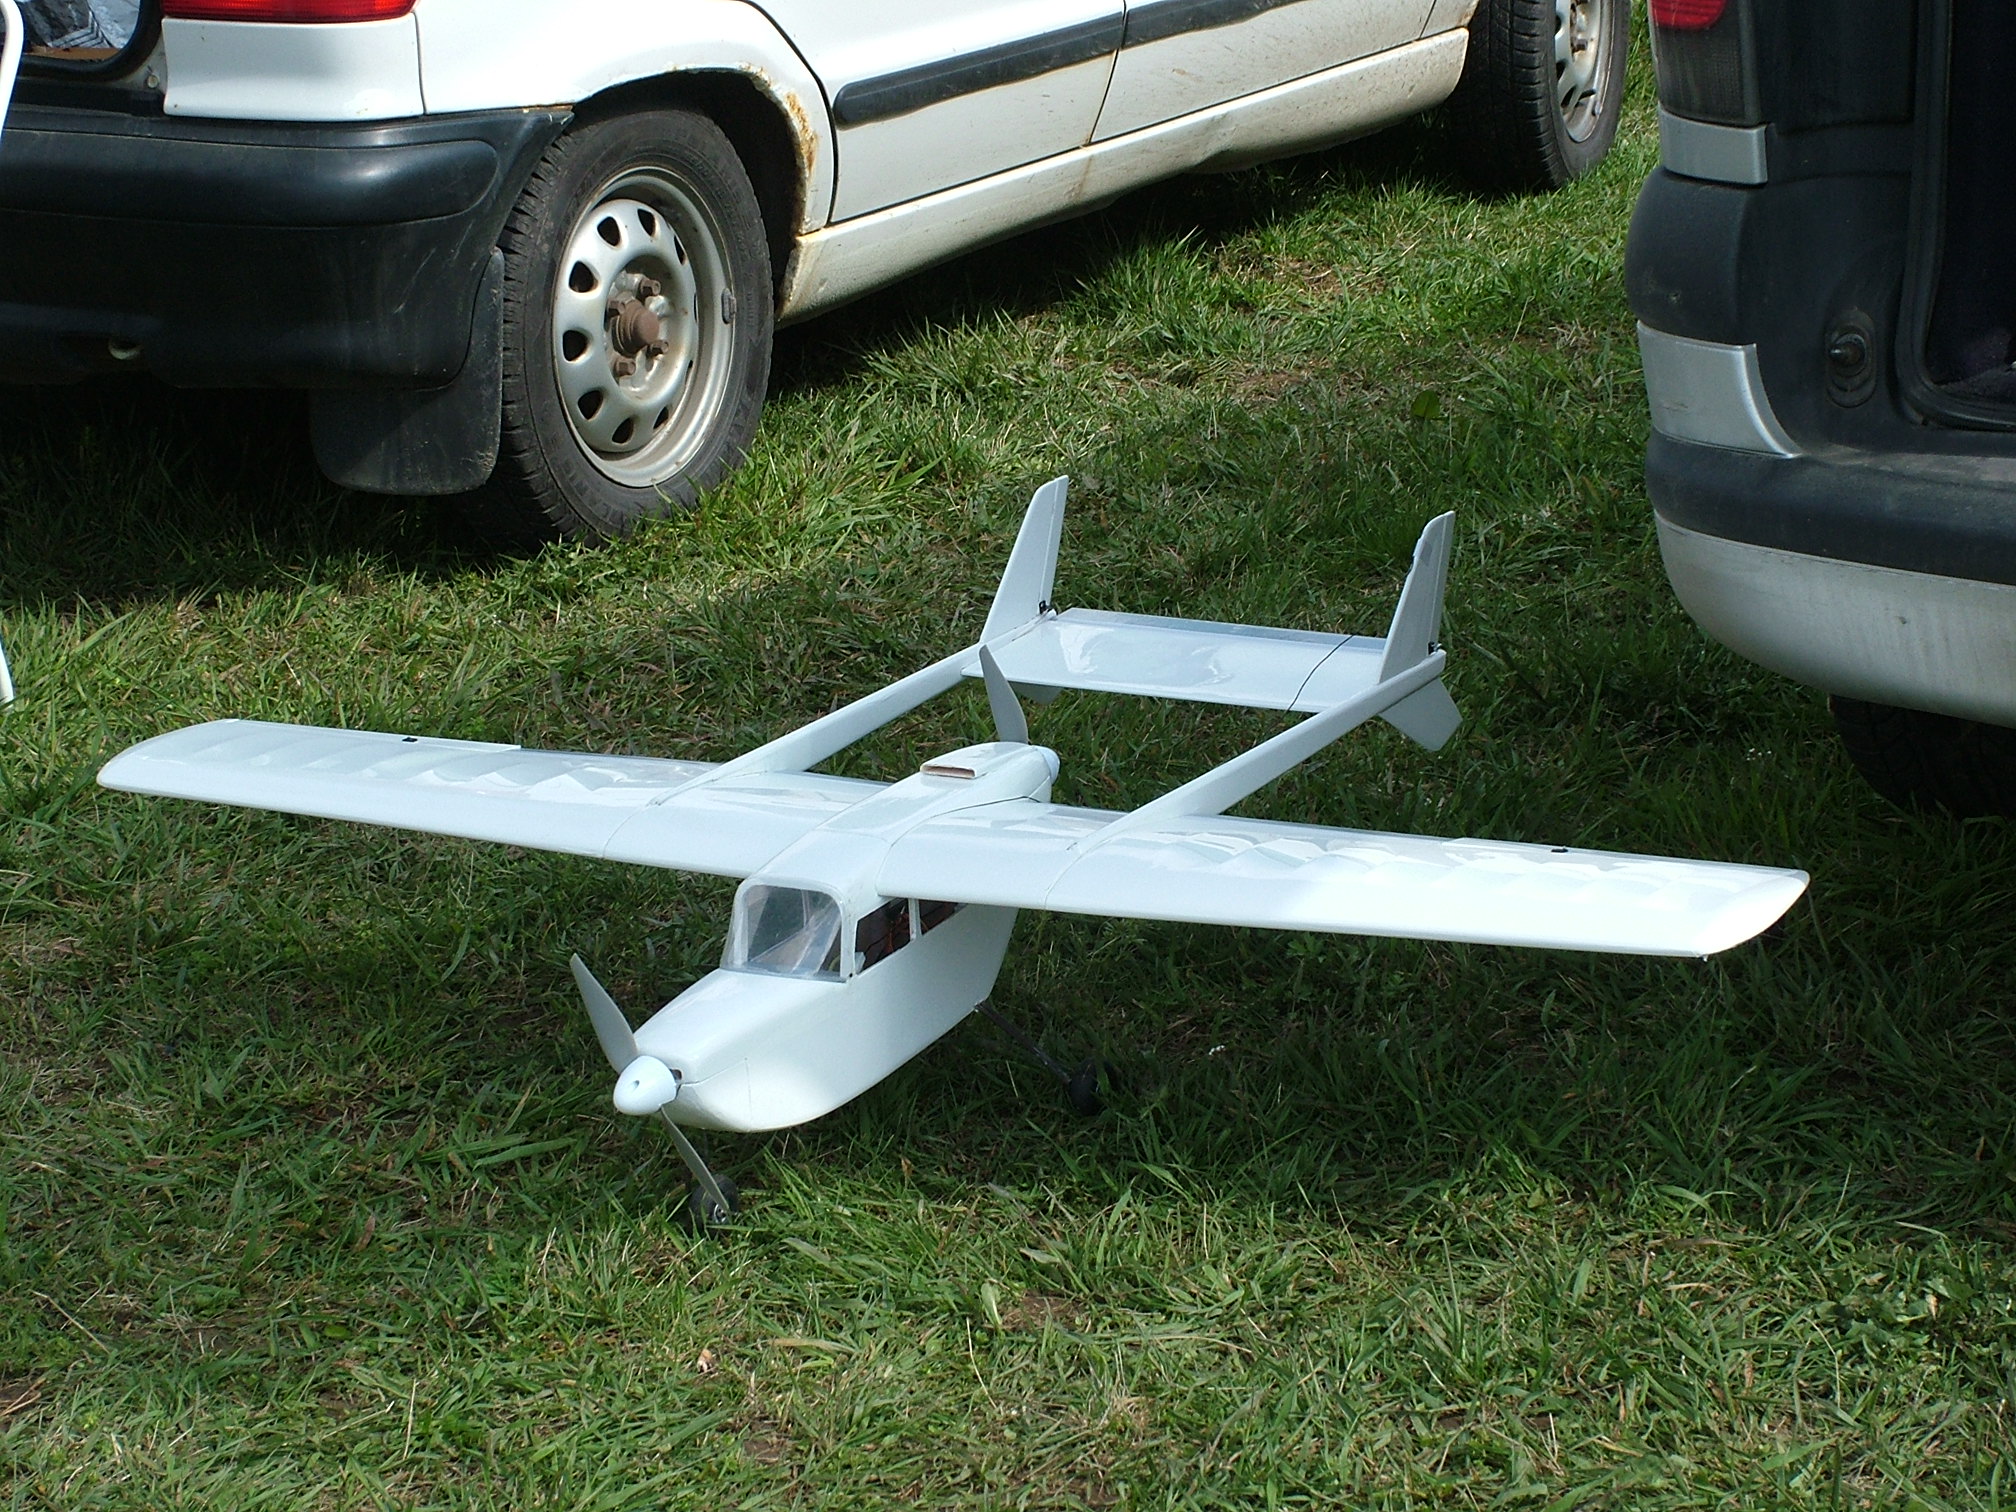 009 - Hezká Cessna - motorky ji neuvezly.JPG